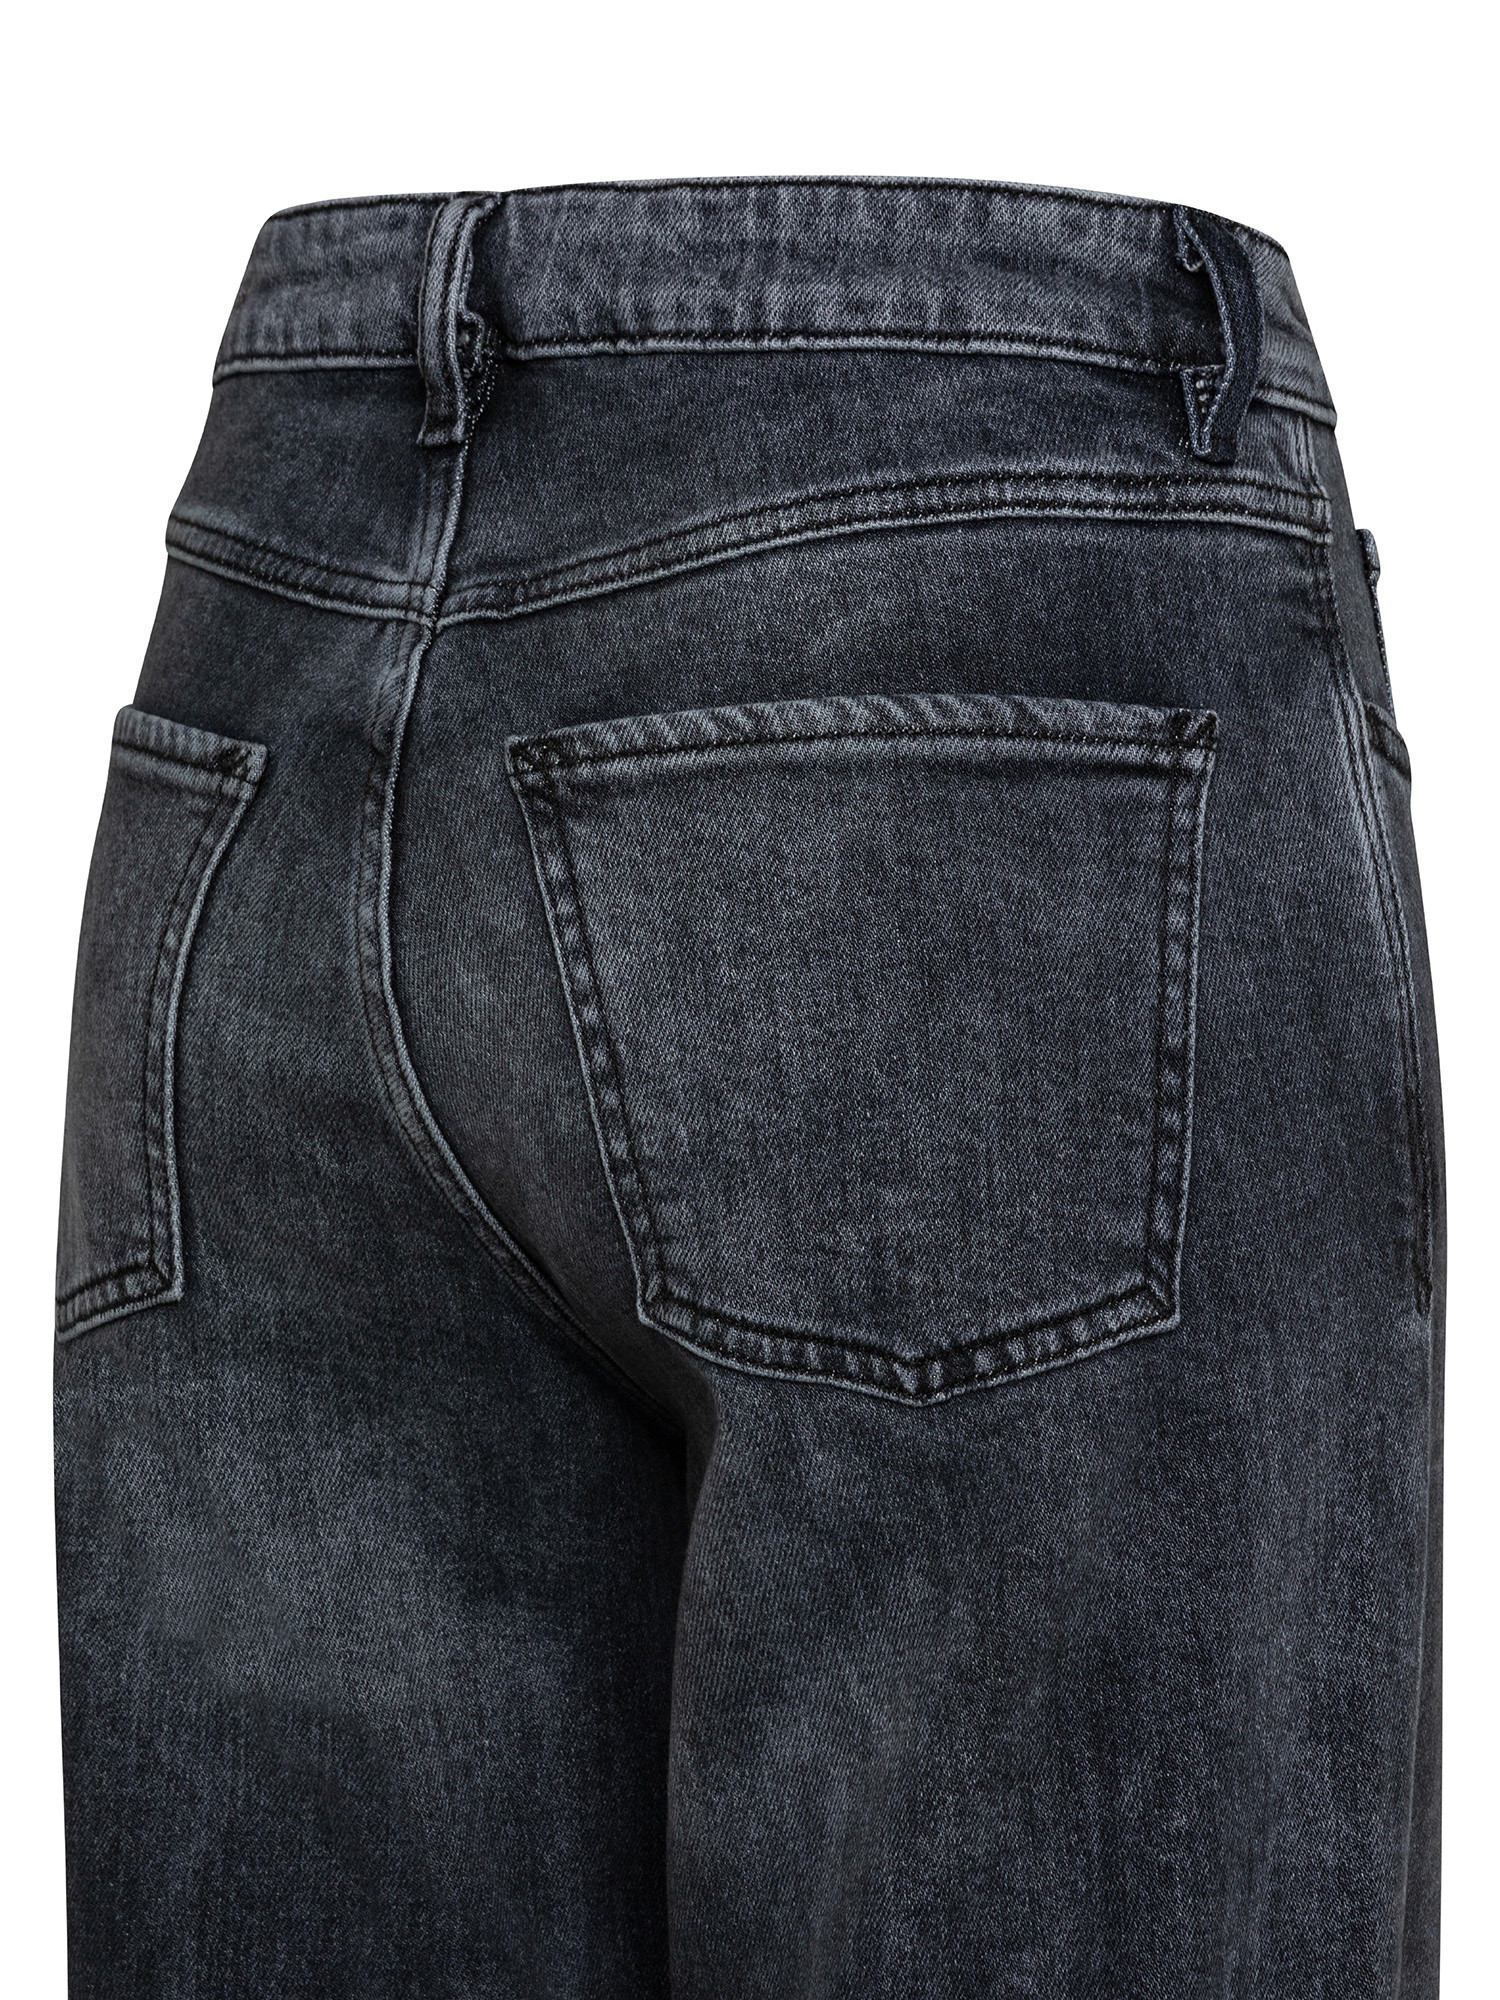 Esprit - Jeans cinque tasche, Grigio scuro, large image number 2